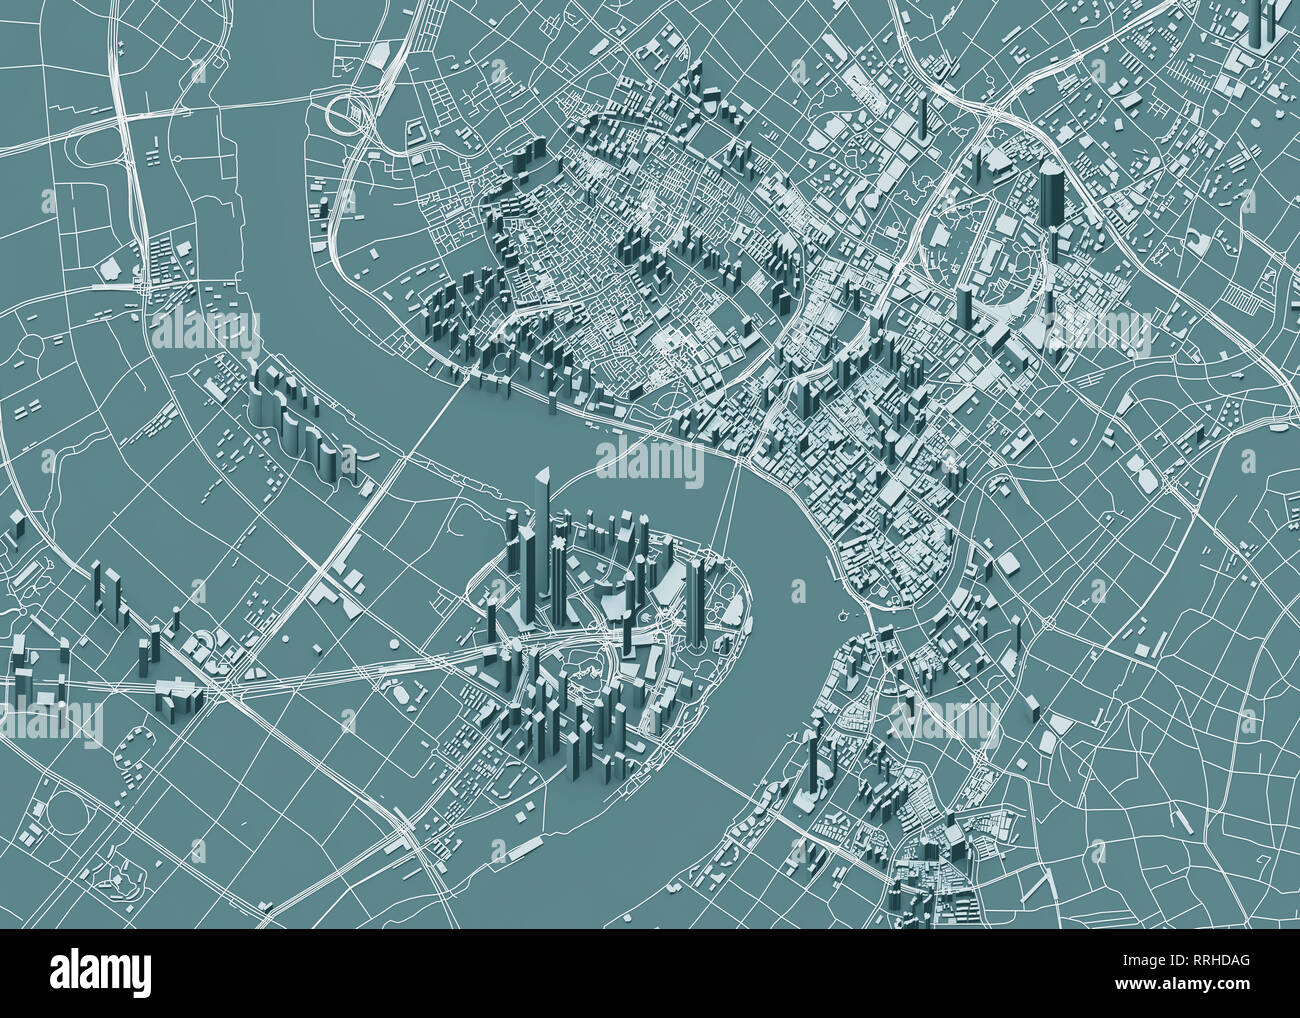 Vue satellite de Shanghai, carte de la ville avec la maison et le bâtiment. Gratte-ciel. La Chine. République populaire de Chine. Le rendu 3D Banque D'Images